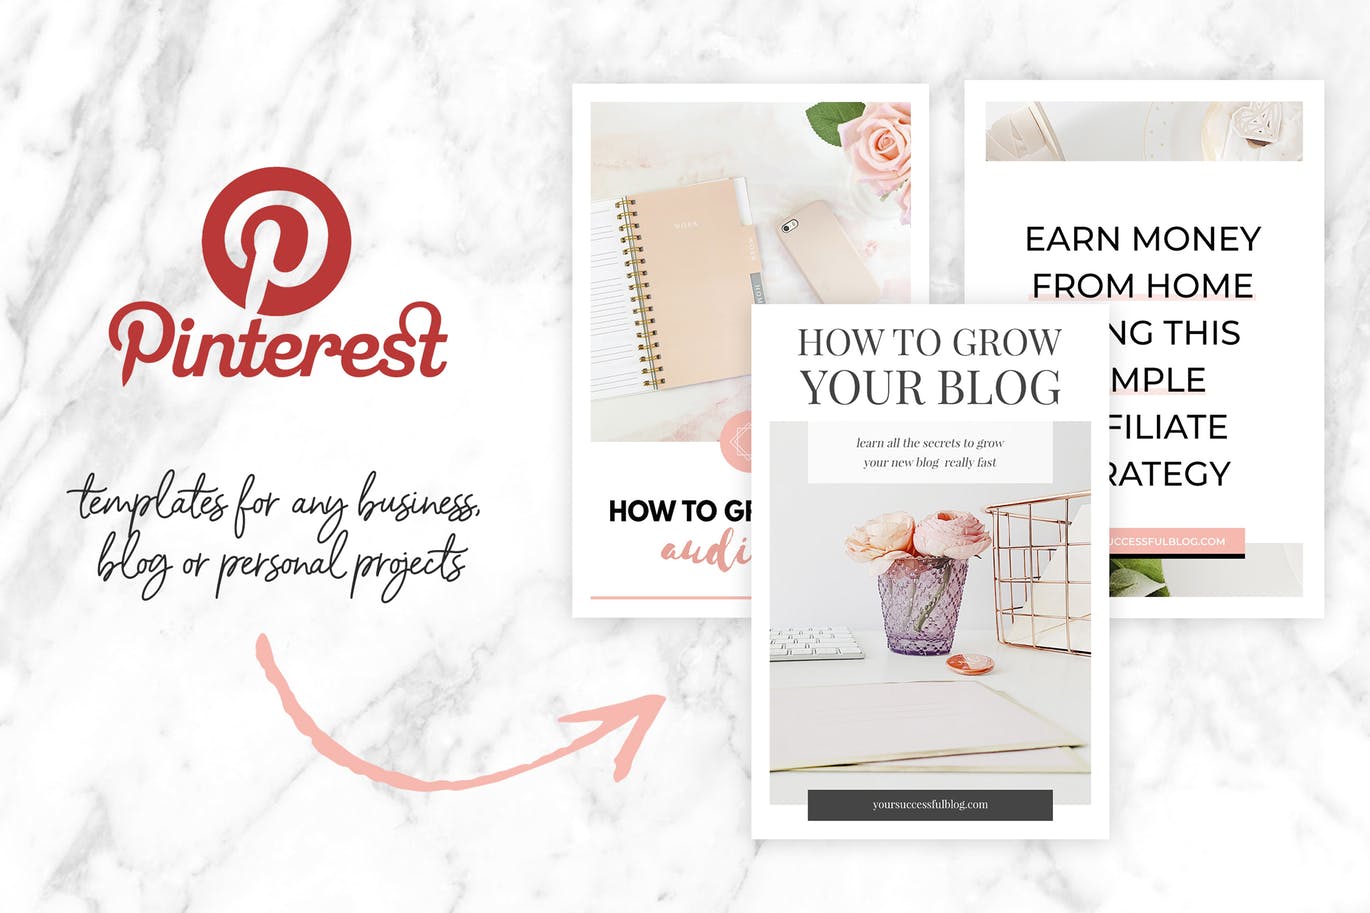 10款粉色主题Pinterest社交贴图广告设计模板素材库精选v2 Canva Pinterest Templates V.2插图(1)